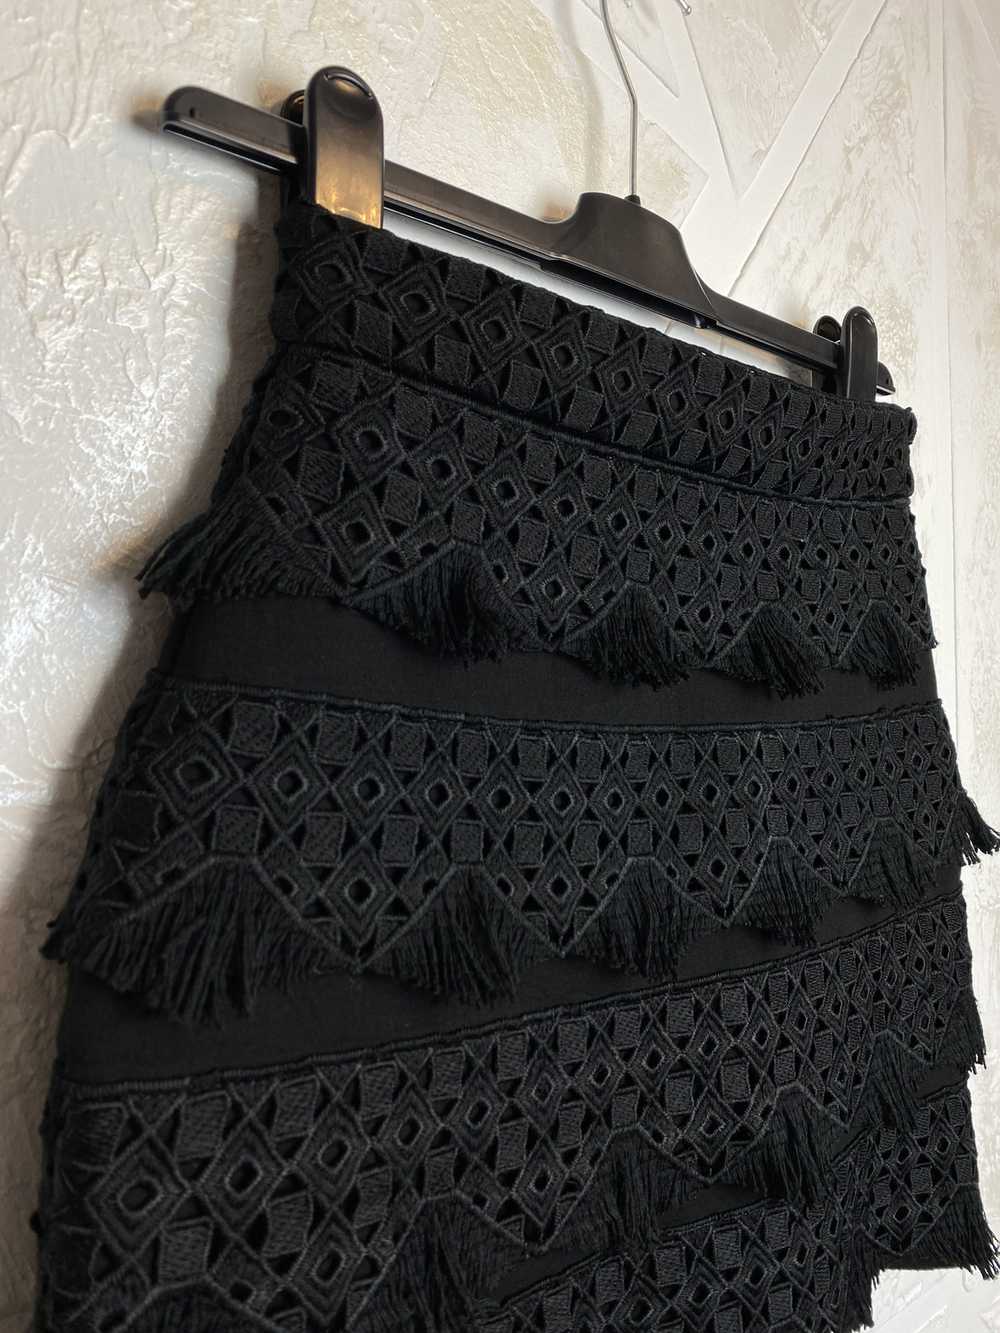 Maje Maje Paris Black Mini Skirt Geometric Patter… - image 4